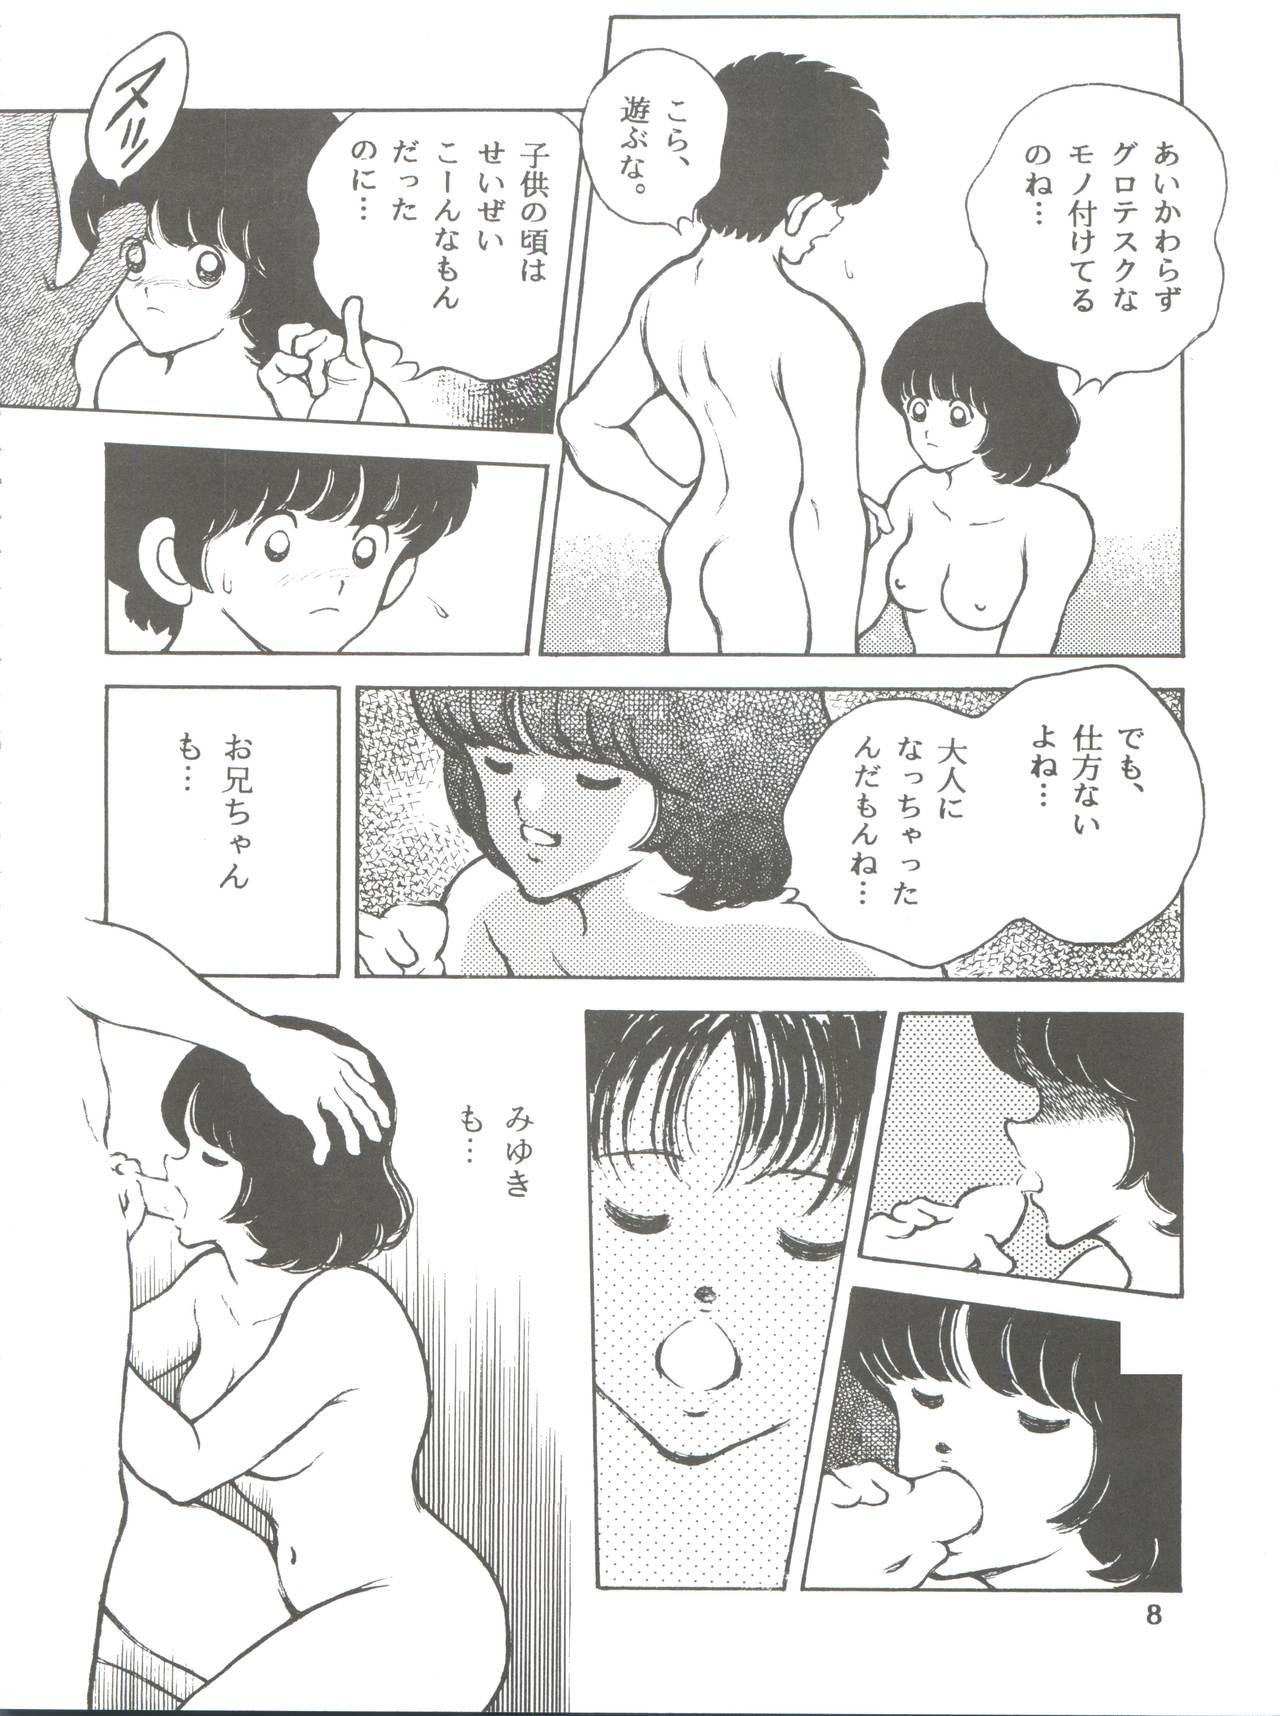 [STUDIO SHARAKU (Sharaku Seiya)] Kanshoku -TOUCH- vol.5 (Miyuki) [2000-08-13] 7